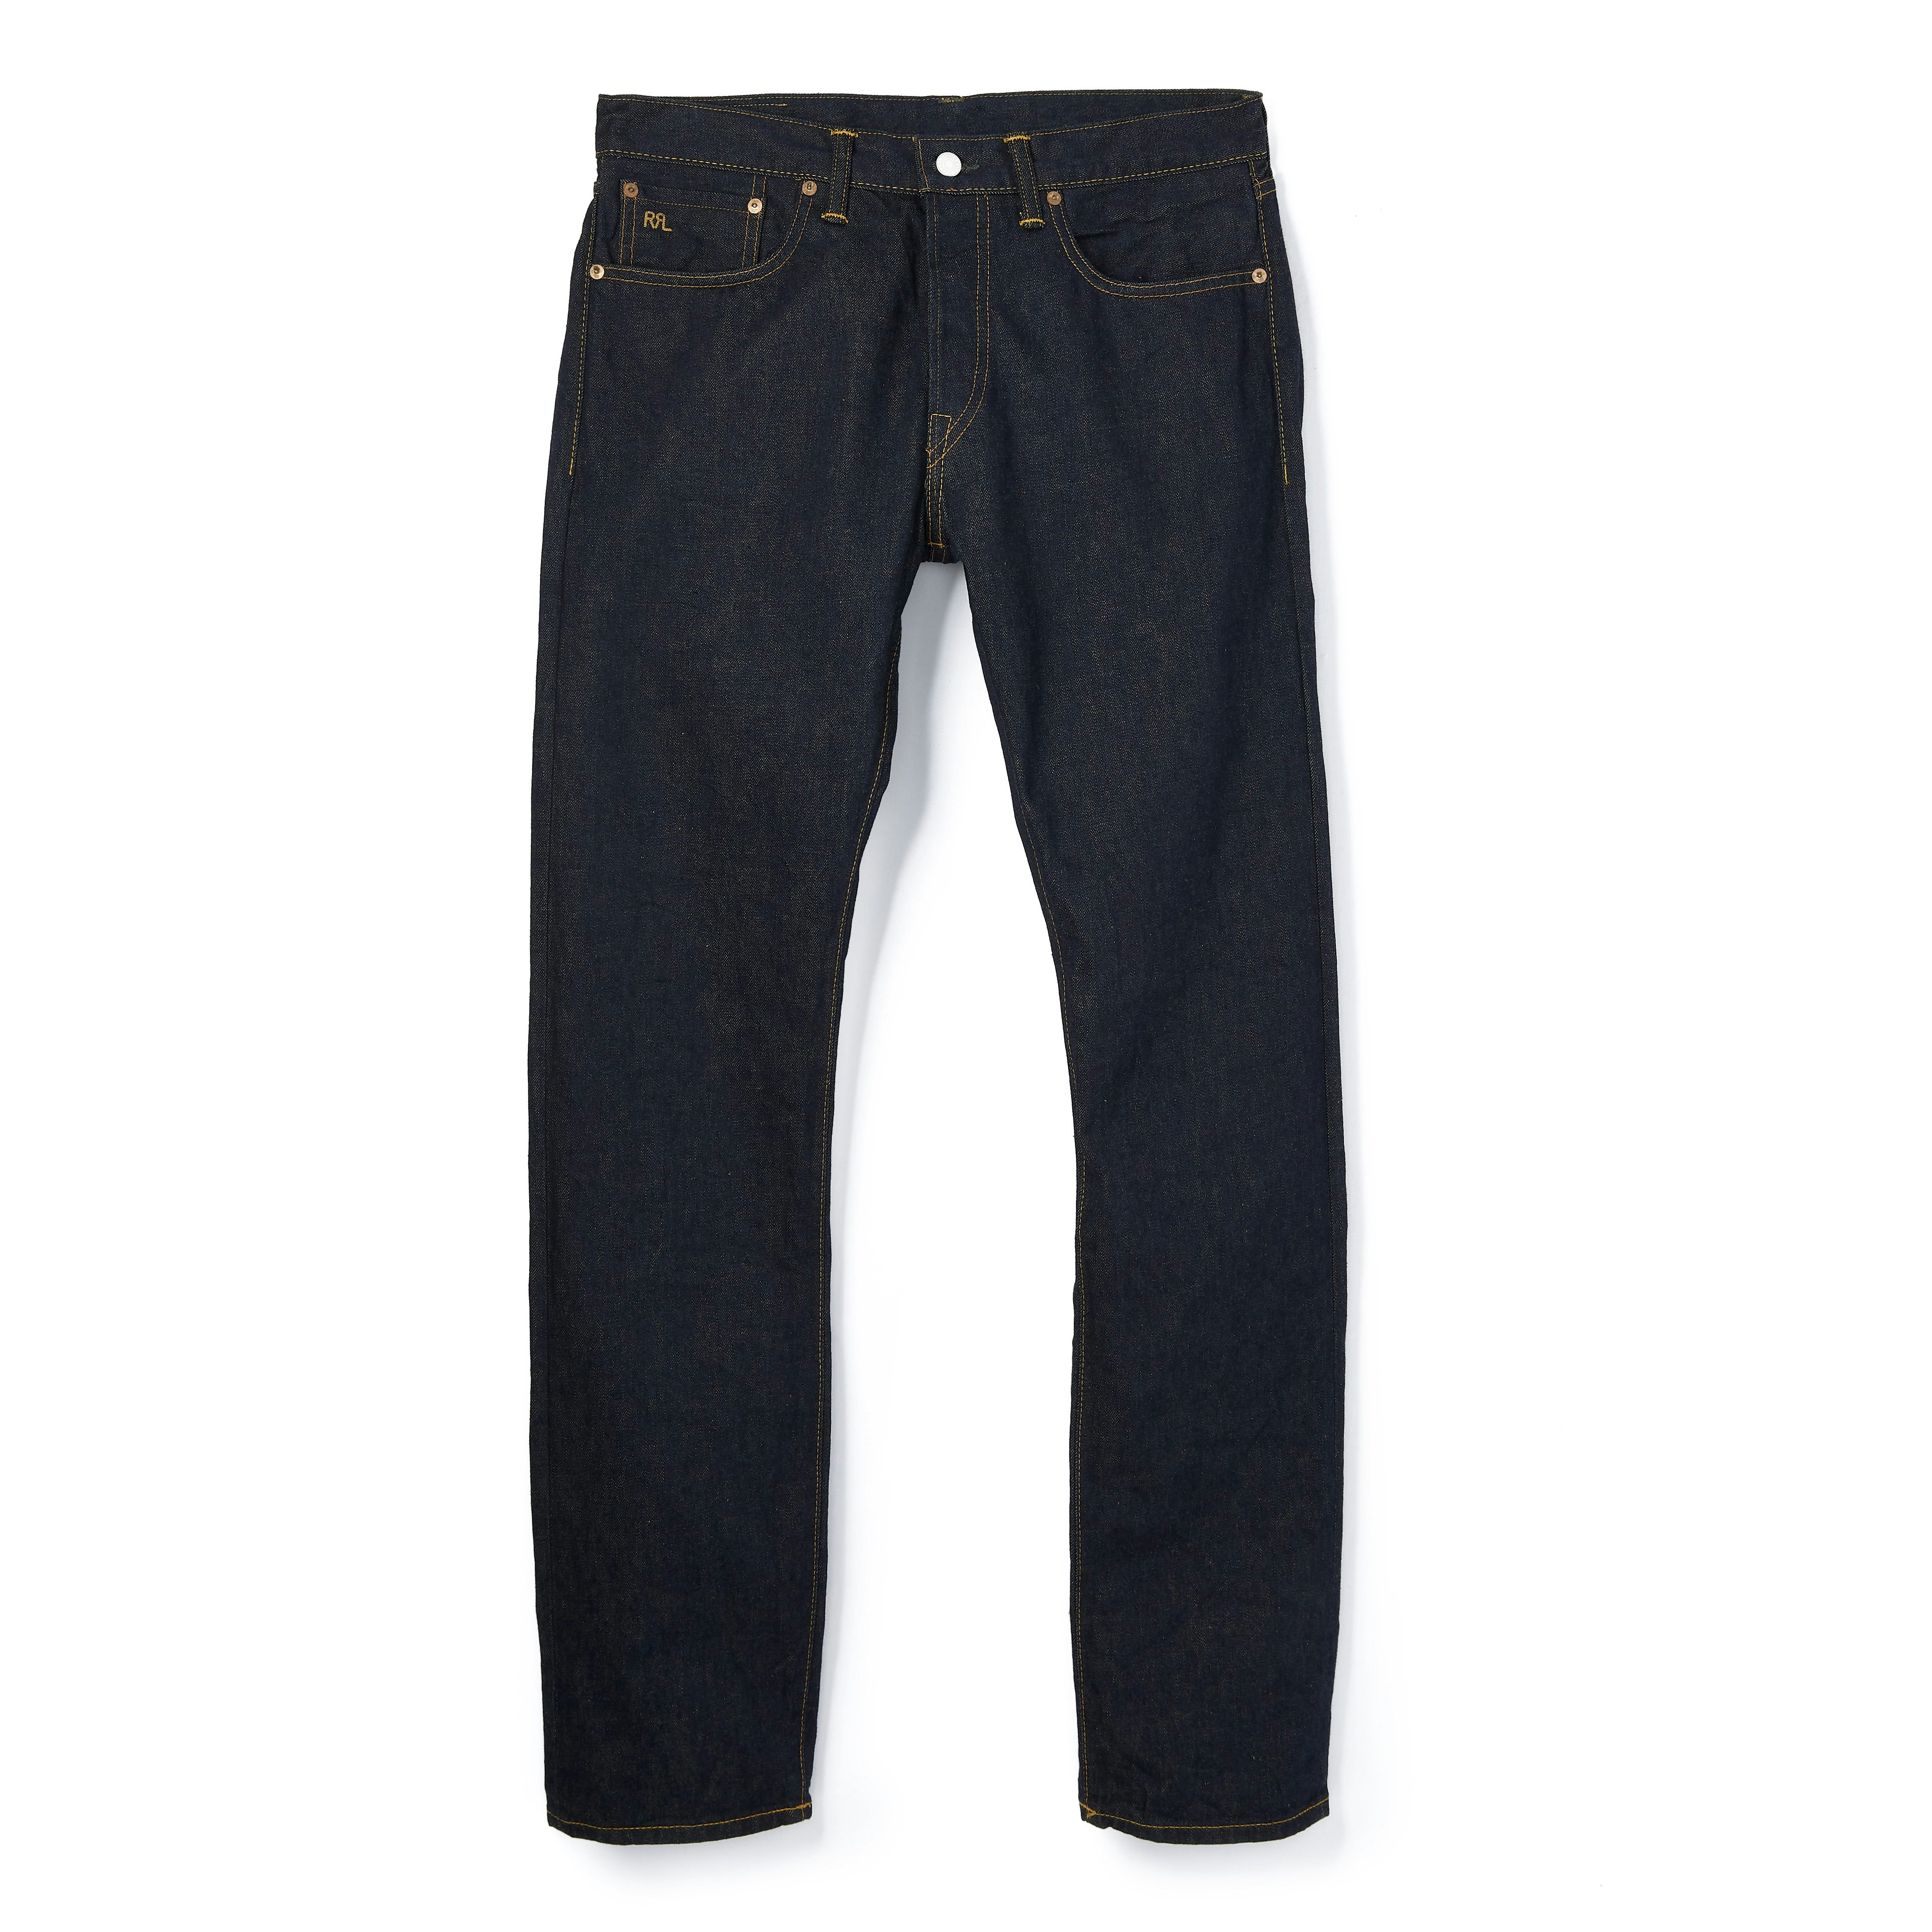 Men's Slim Fit Jeans - Designer Denim for Men | 7 For All Mankind